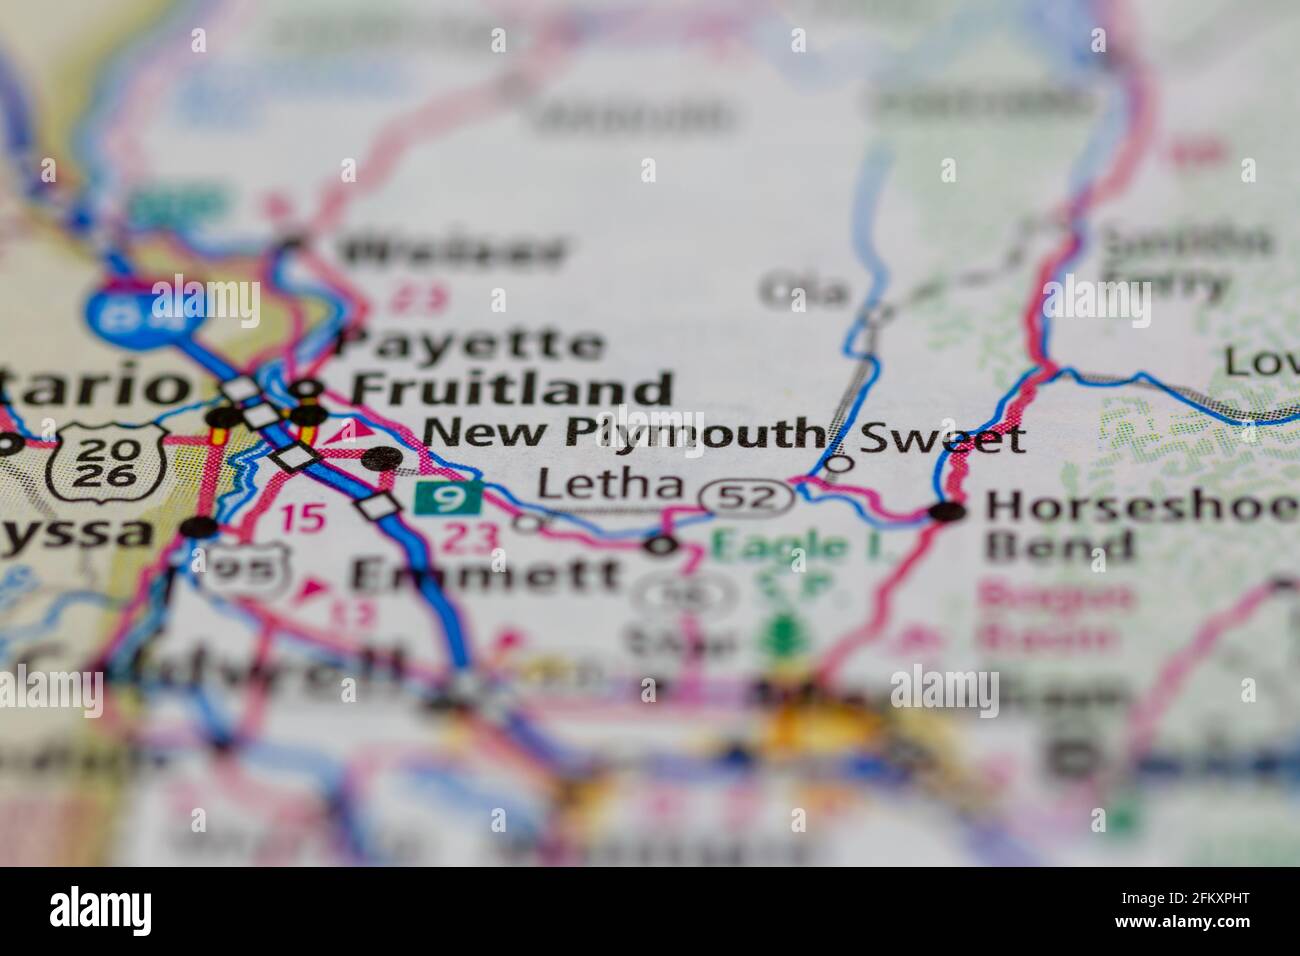 New Plymouth Idaho USA montré sur une carte de géographie ou carte routière Banque D'Images